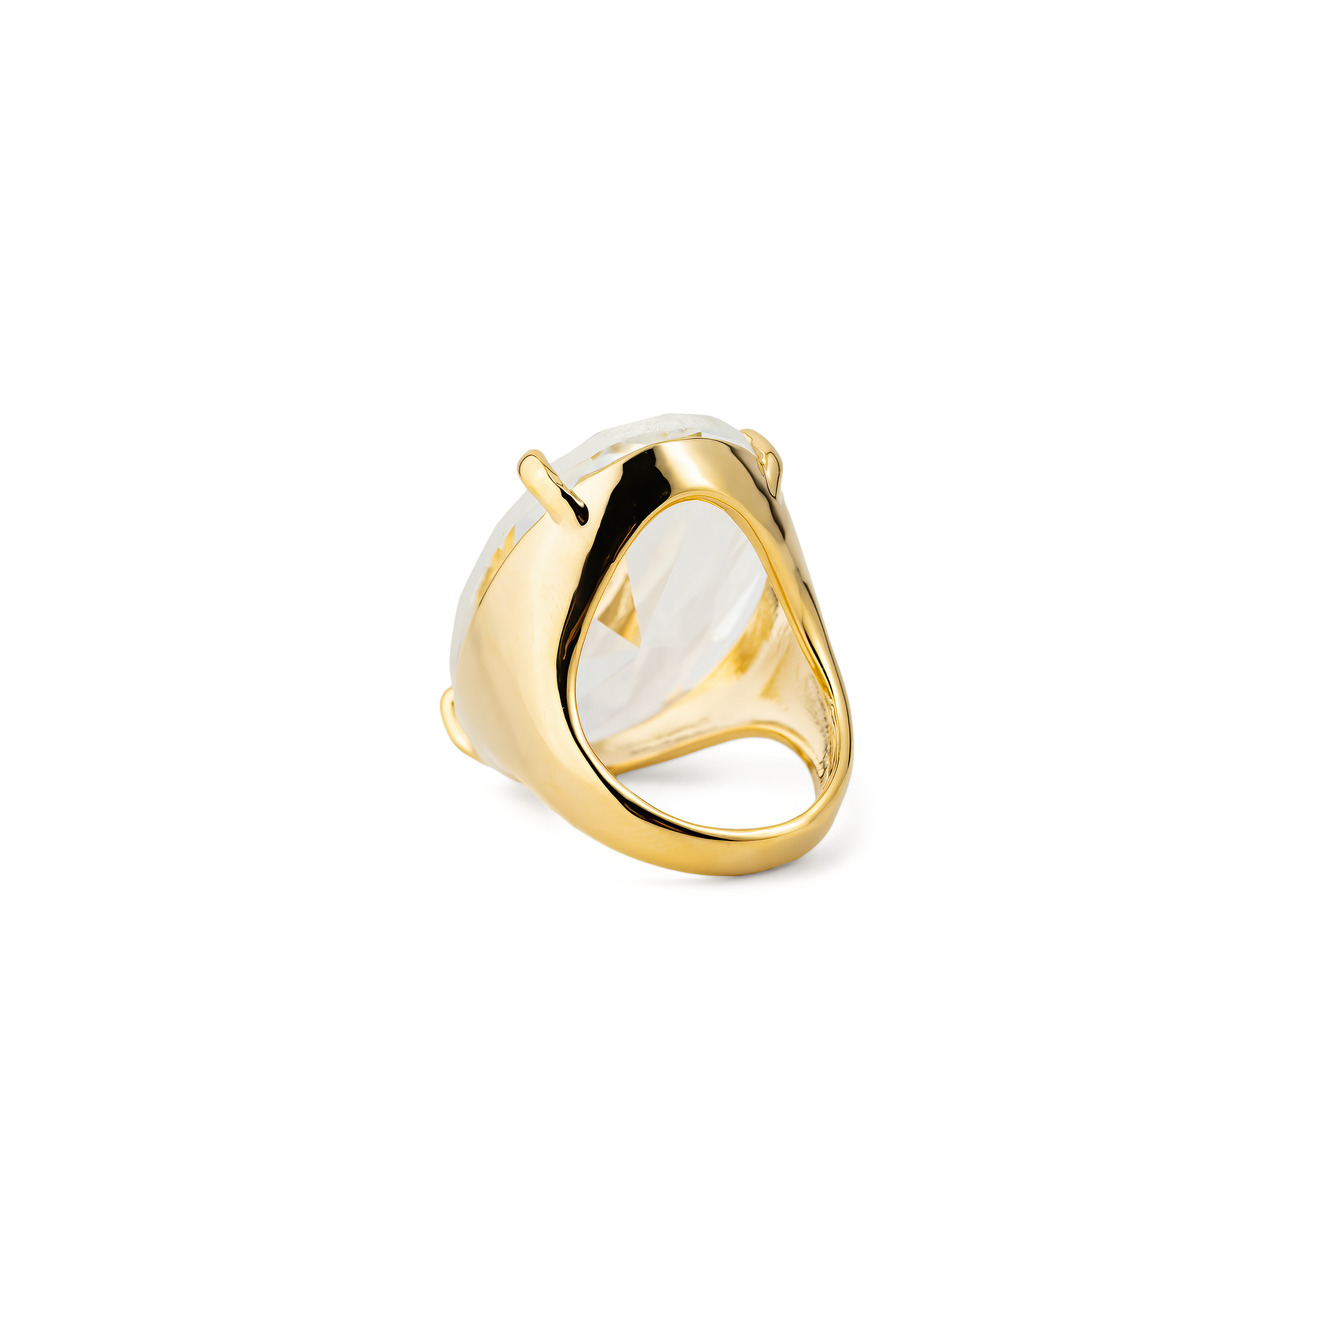 Herald Percy Золотистое кольцо с овальным кристаллом